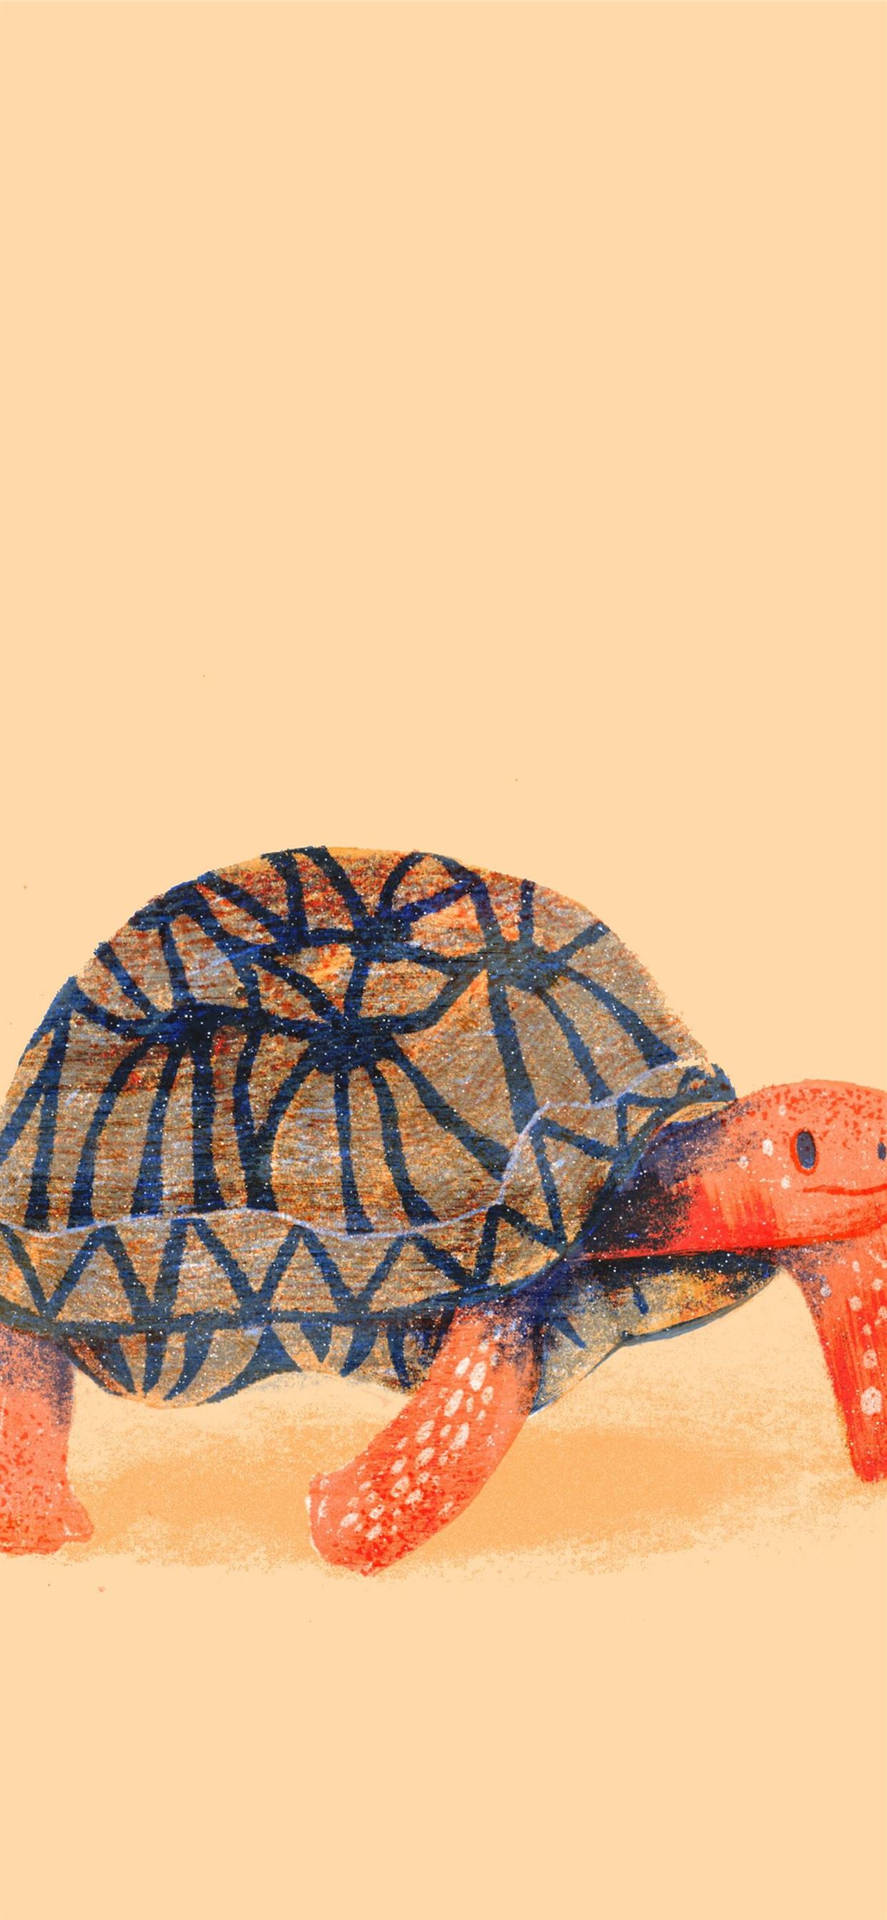 Sköldpaddakritkonst Wallpaper